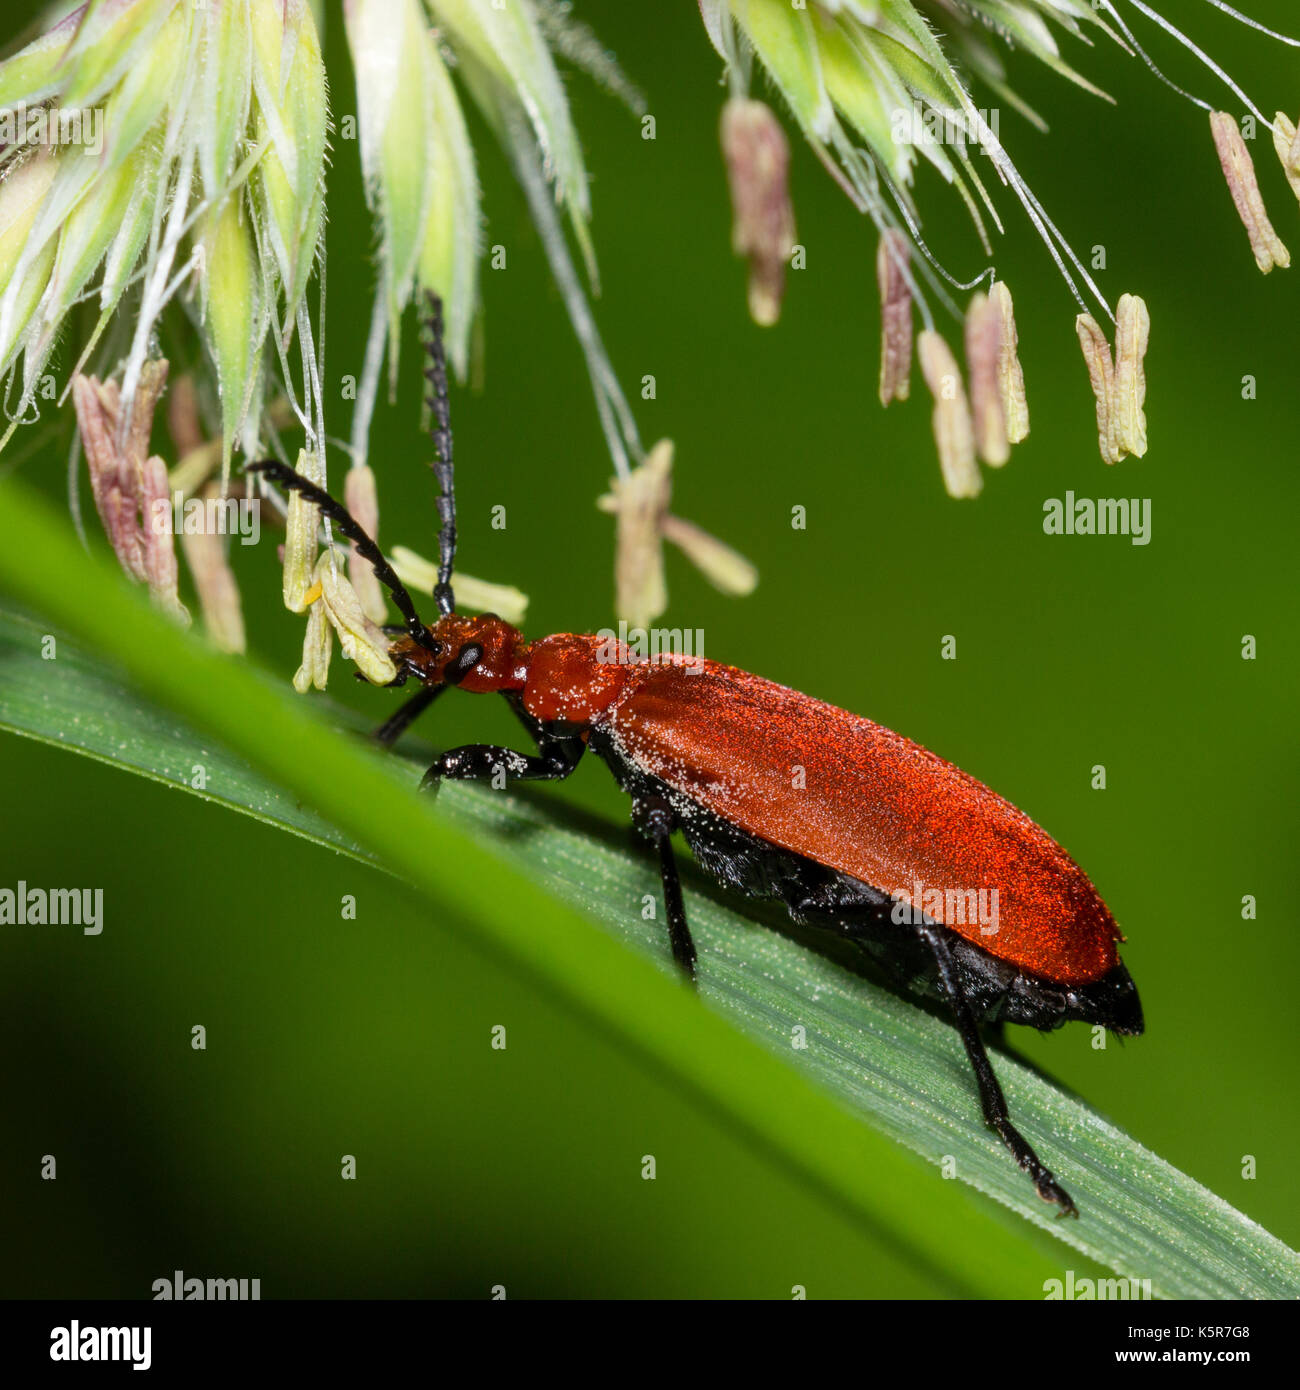 Red Headed cardinal Pyrochroa serraticornis, scarabée, sur tige d'herbe avec des anthères d'herbe derrière Banque D'Images